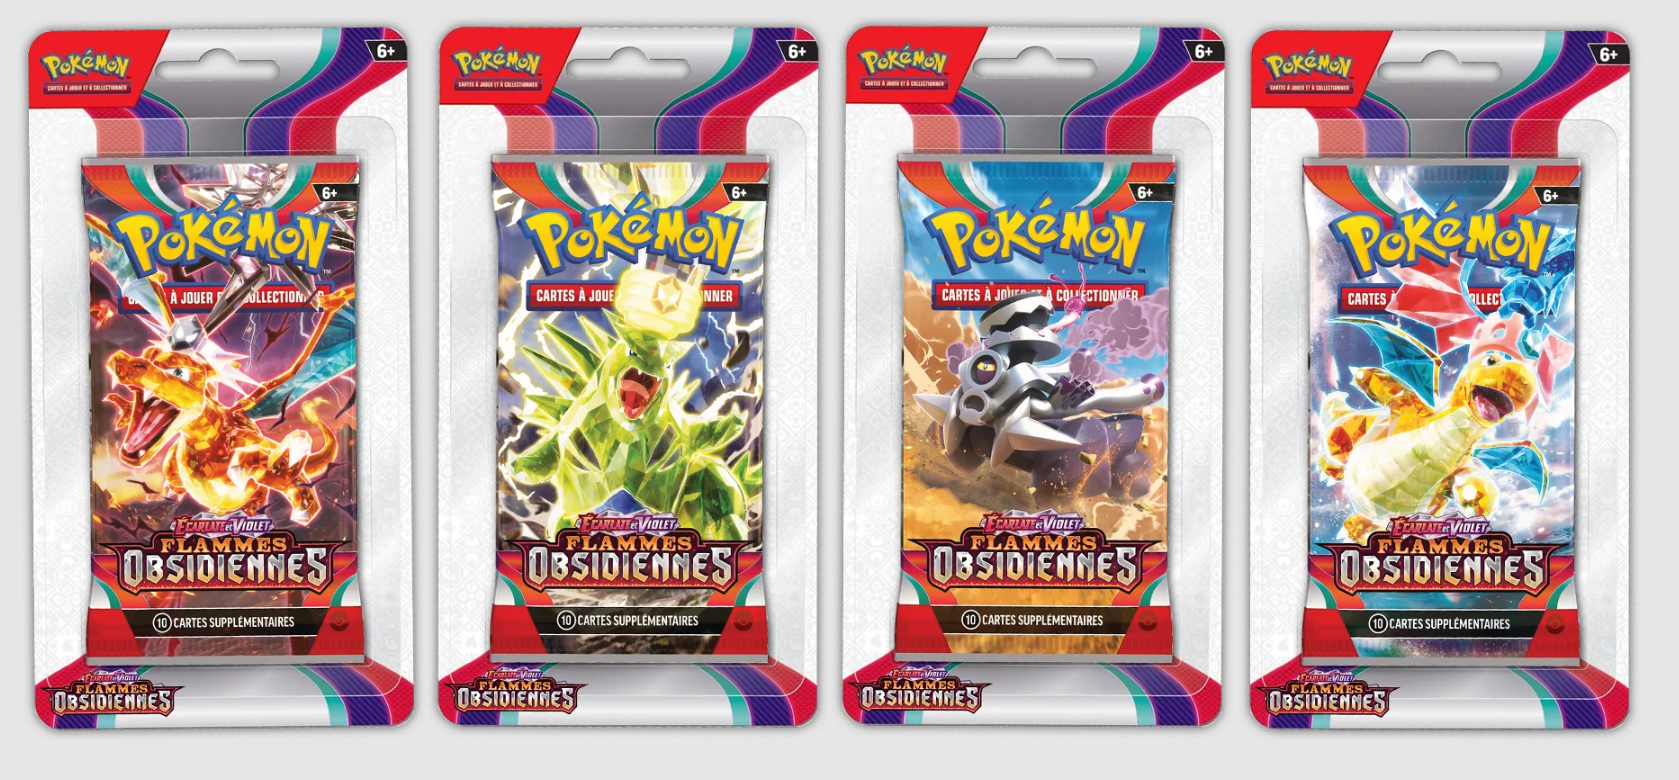 Pokémon - x1 Booster sous Blister EV03 Ecarlate Et Violet 3 Flammes  Obsidiennes EV3 FR -Modèle aléatoire